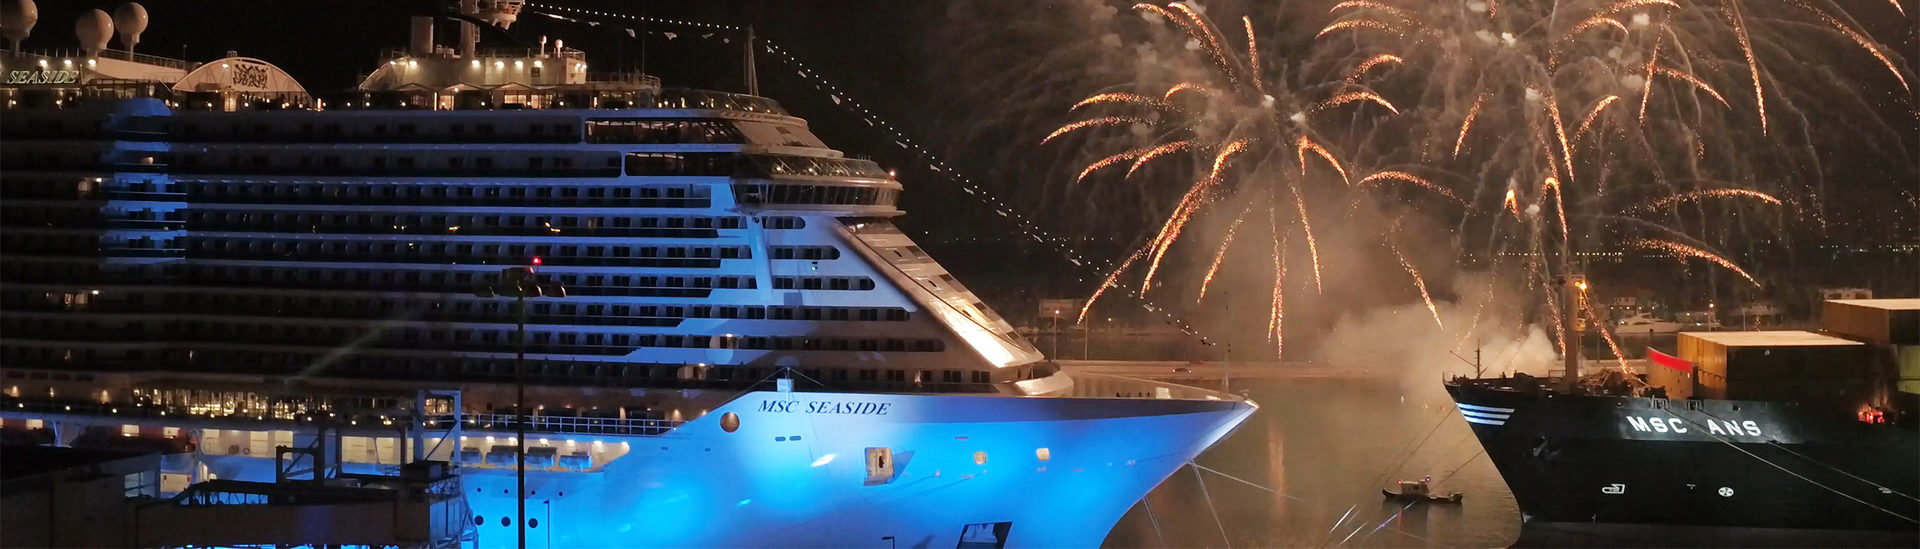 MSC Cruises představila svoji novou loď: do vyplutí MSC Seaside zbývá už jen pár dní!